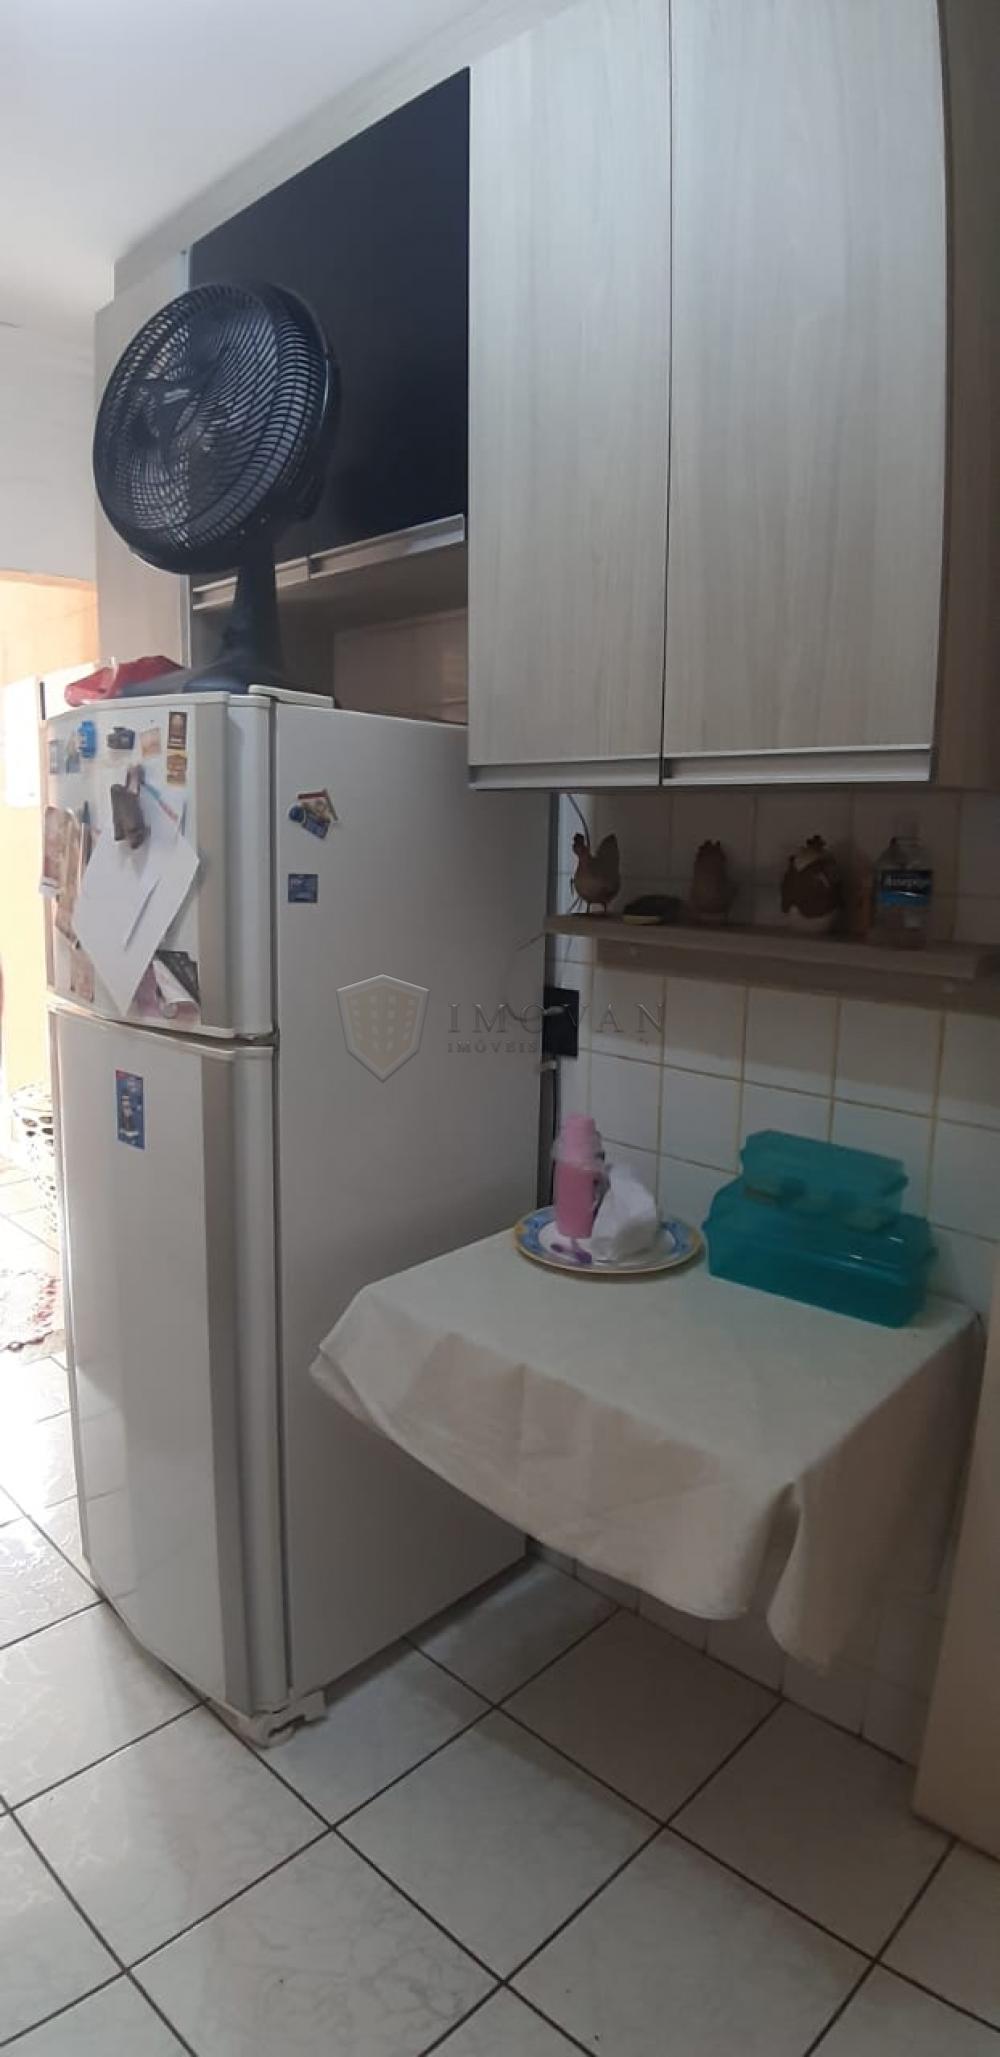 Comprar Casa / Condomínio em Ribeirão Preto R$ 450.000,00 - Foto 6